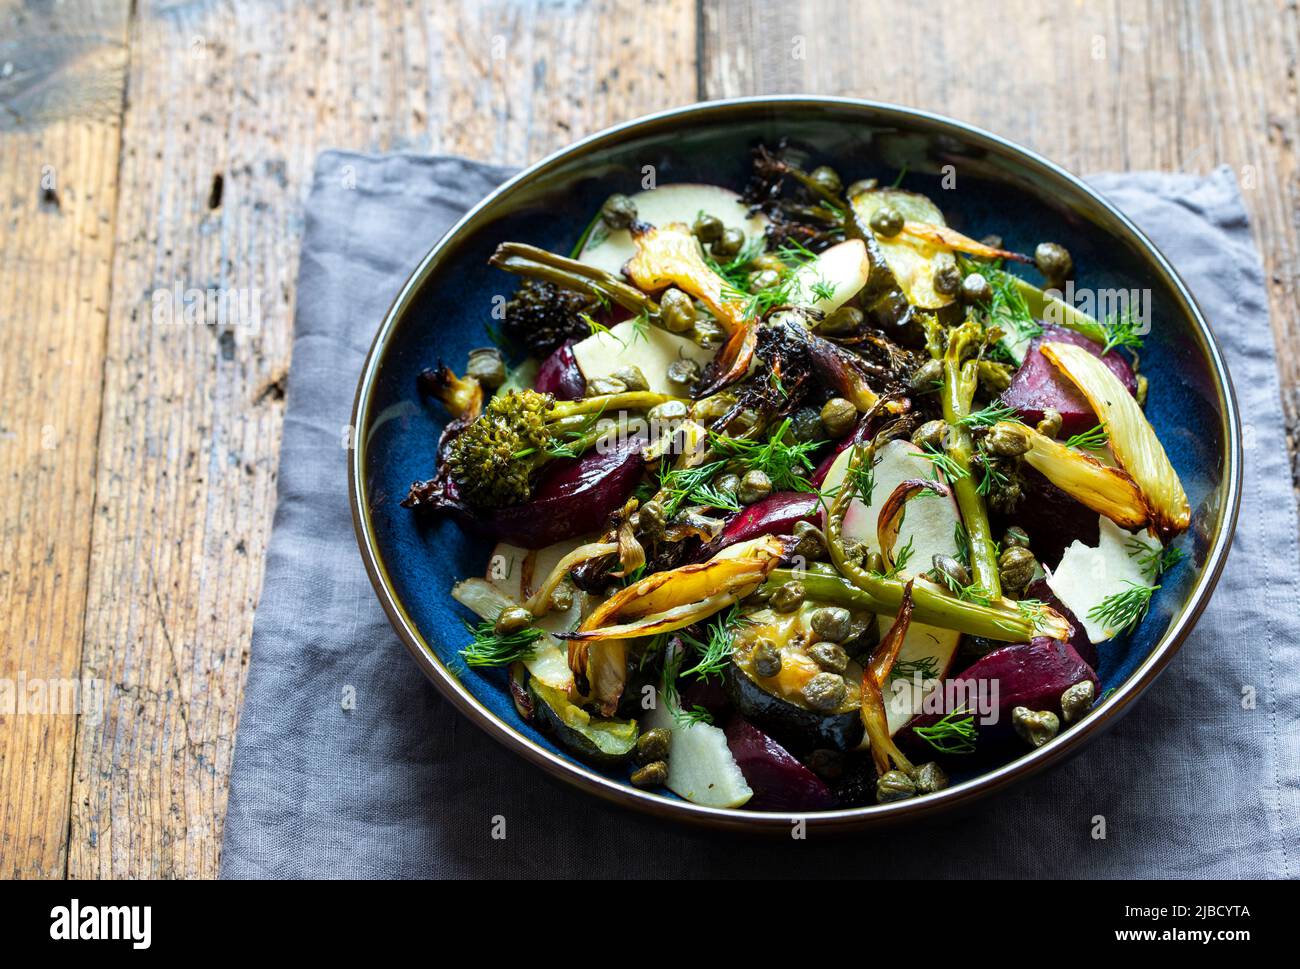 Ensalada caliente con escarabajos asados, brócoli, manzana, hinojo y alcaparras crujientes Foto de stock